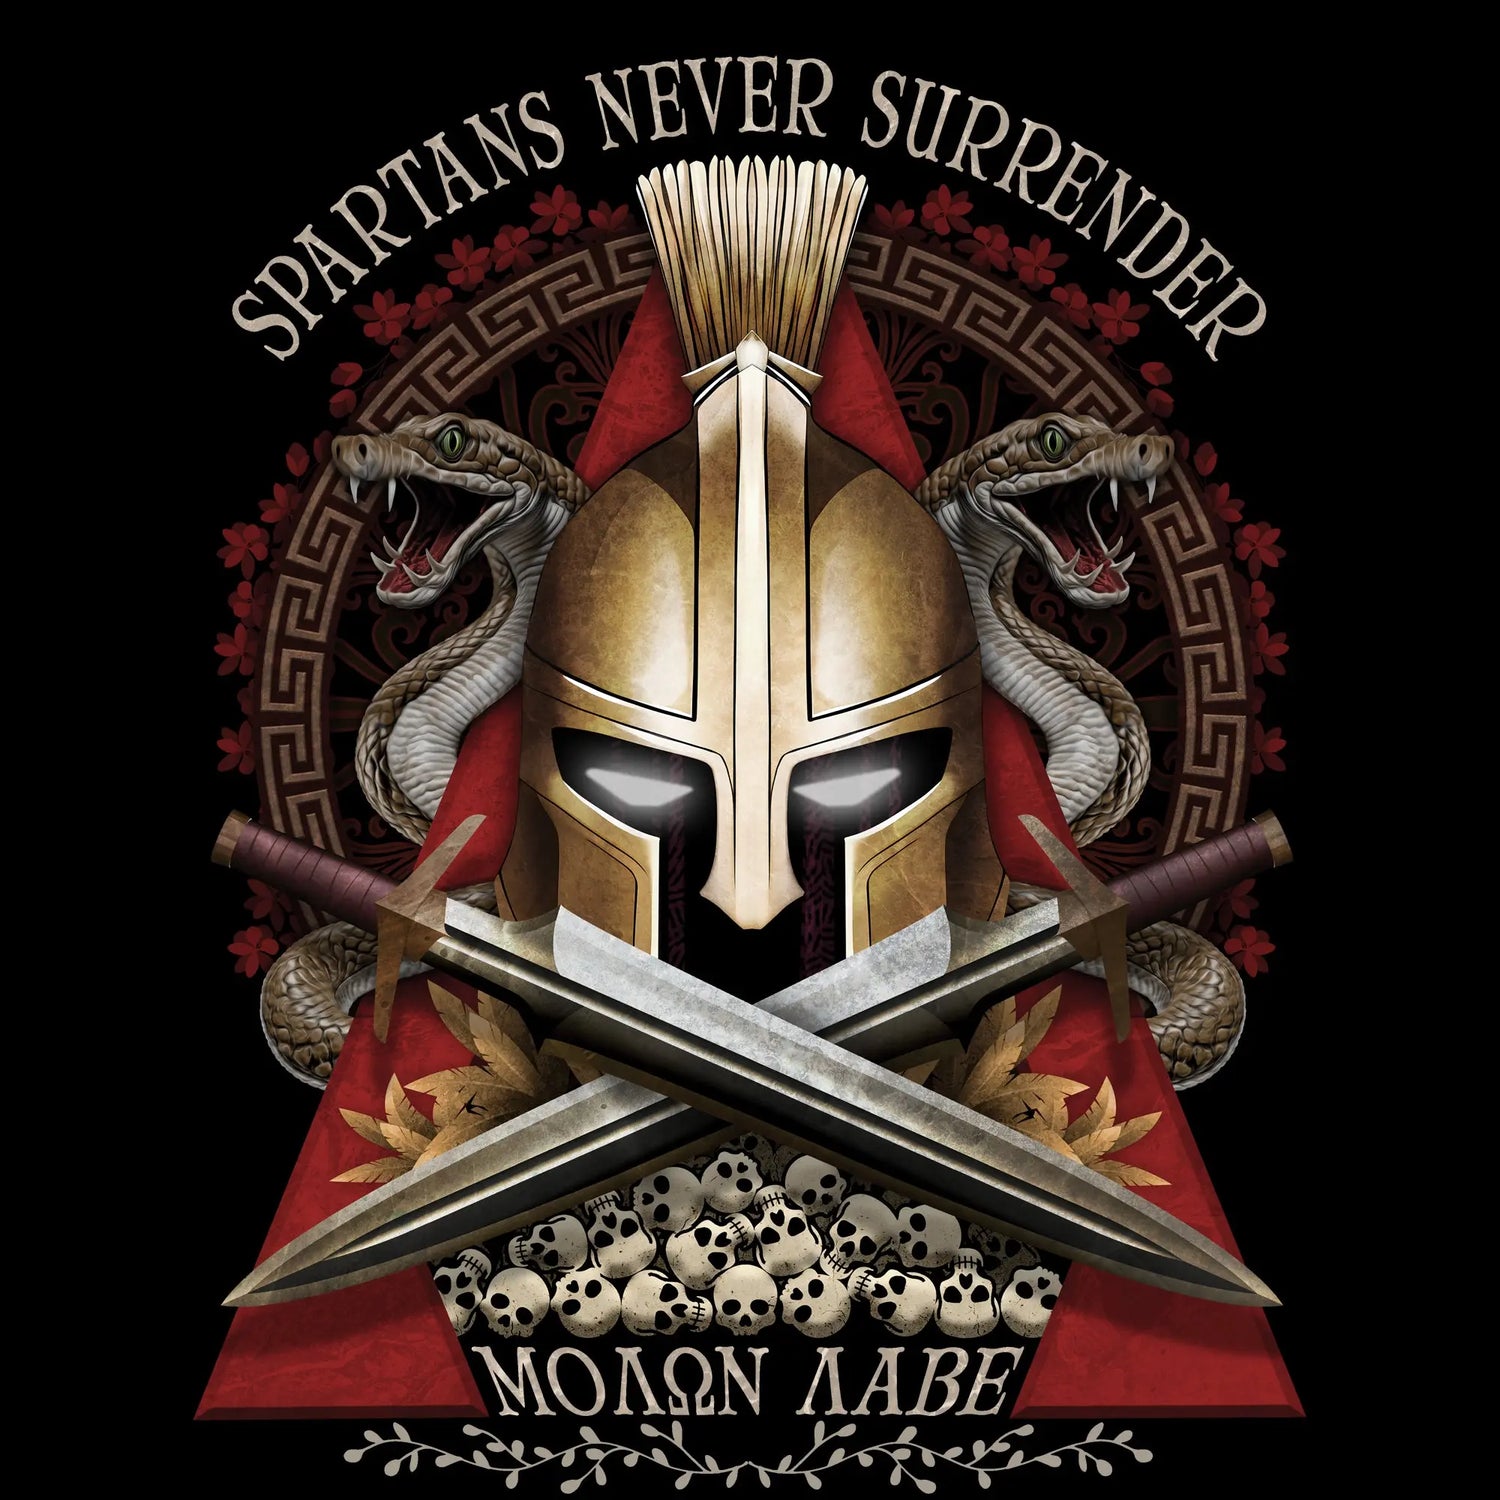 Spartans-Never-Surrender - BC Ink Works